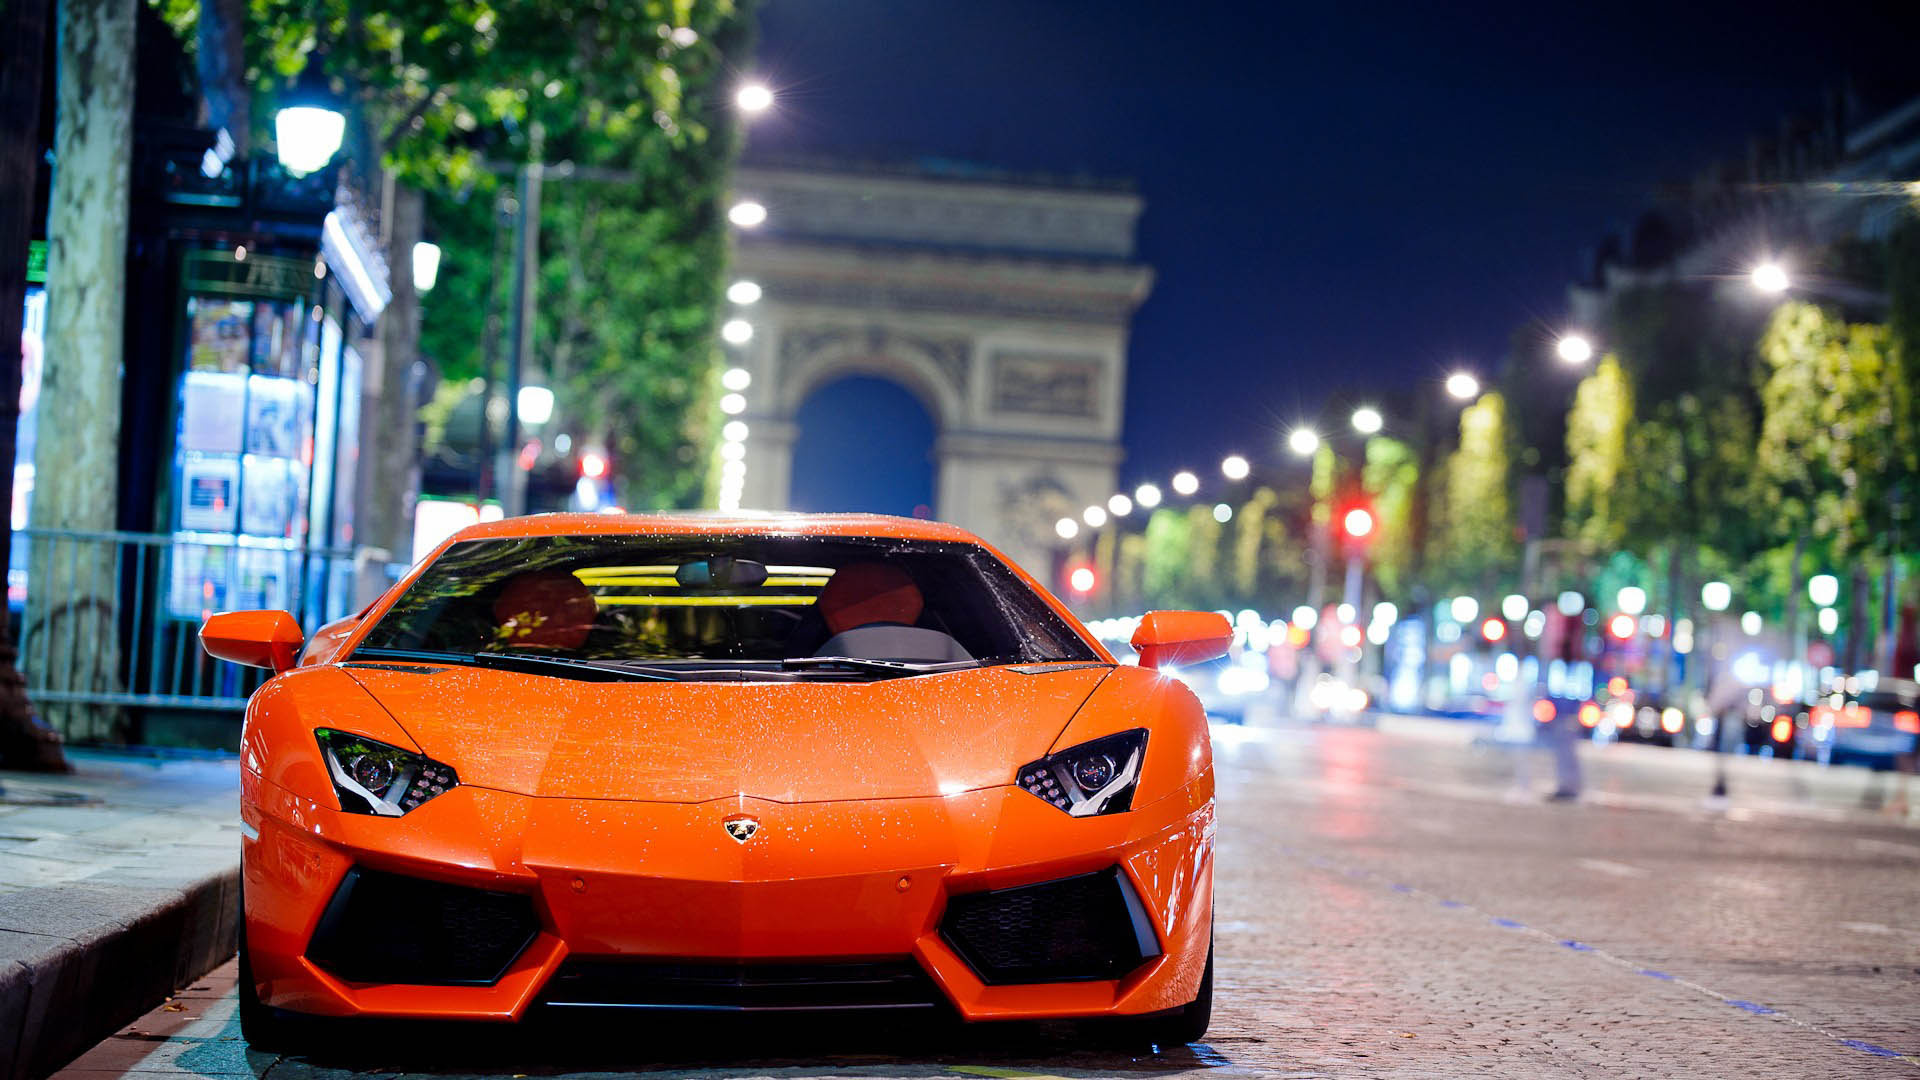 Classic Orange Lamborghini Aventador near the Arc de Triomphe ...